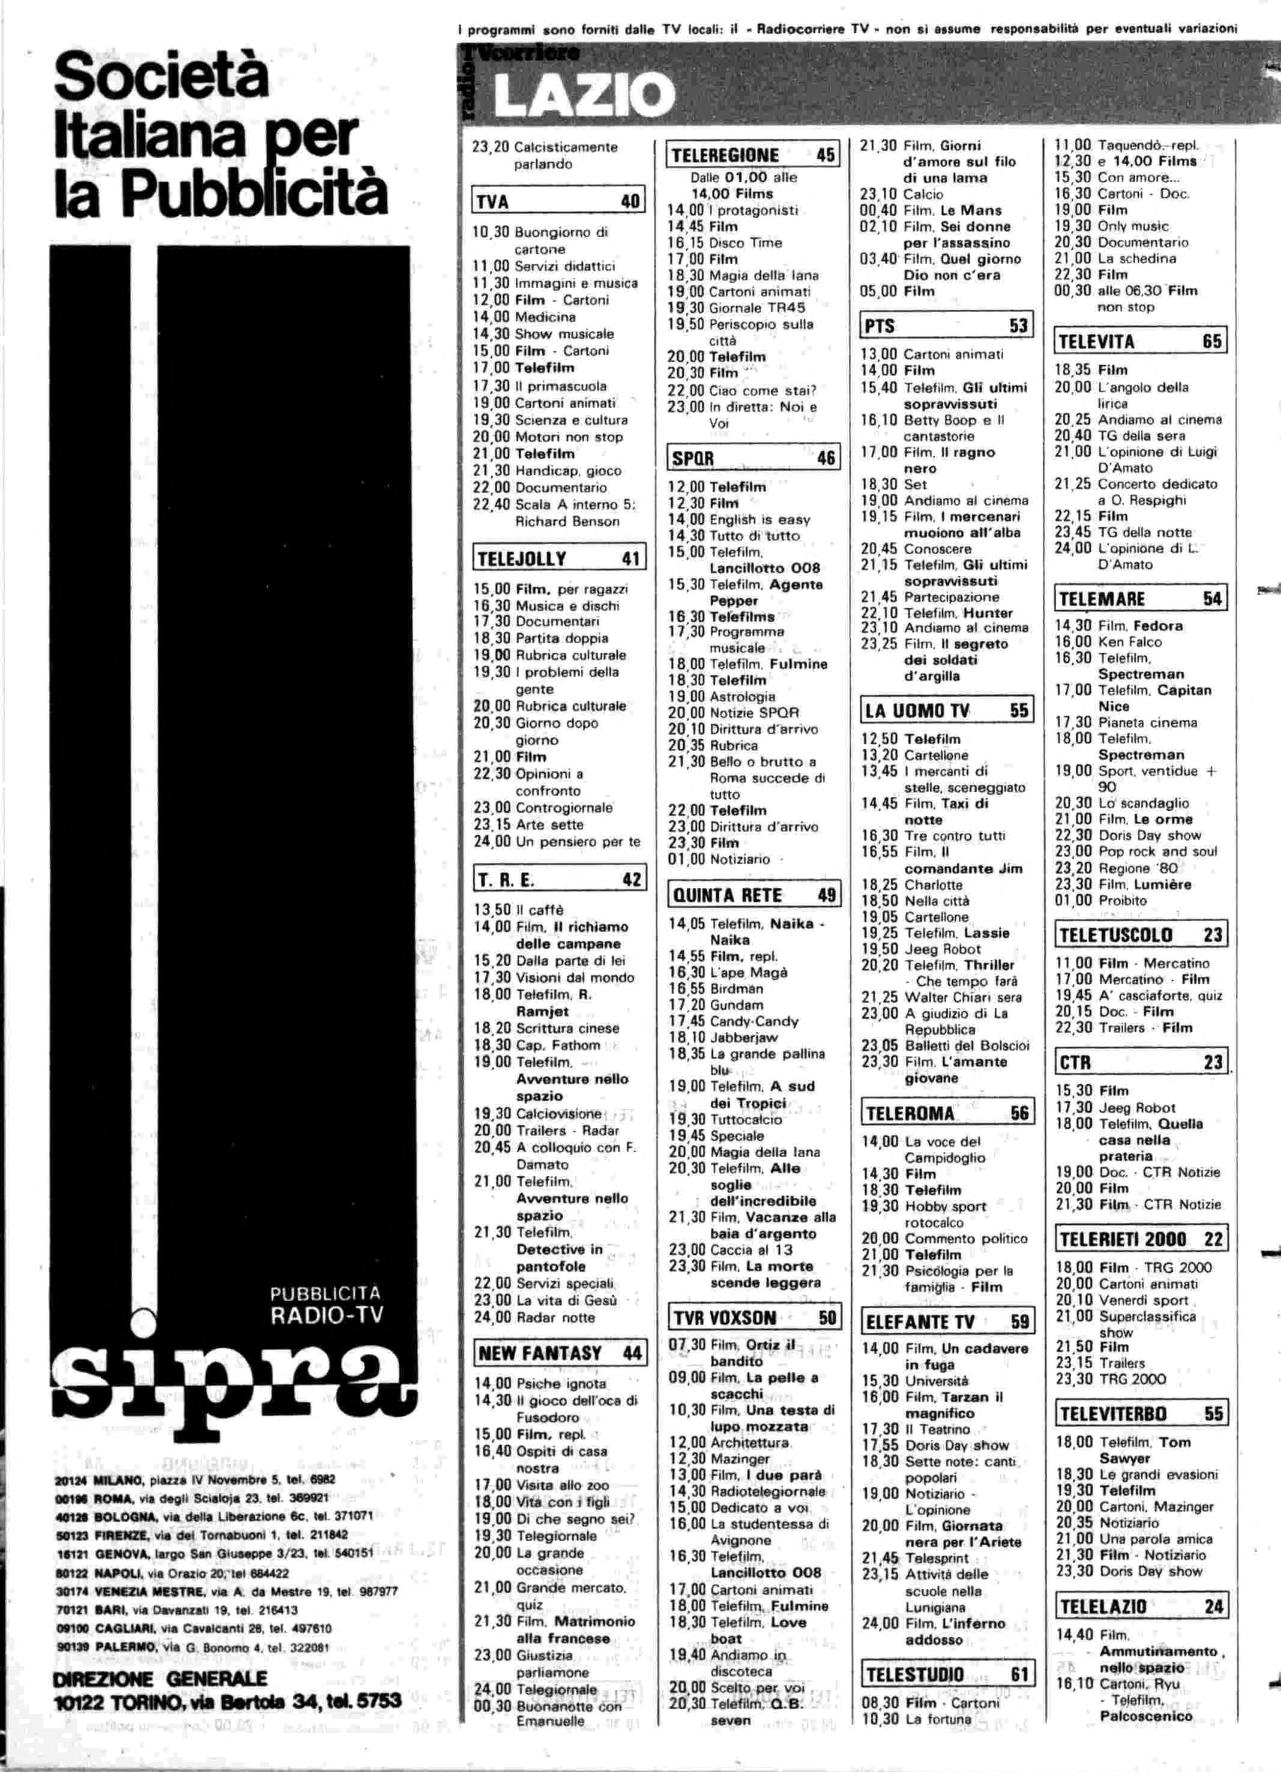 RC-1980-14_0087.jp2&id=Radiocorriere-198